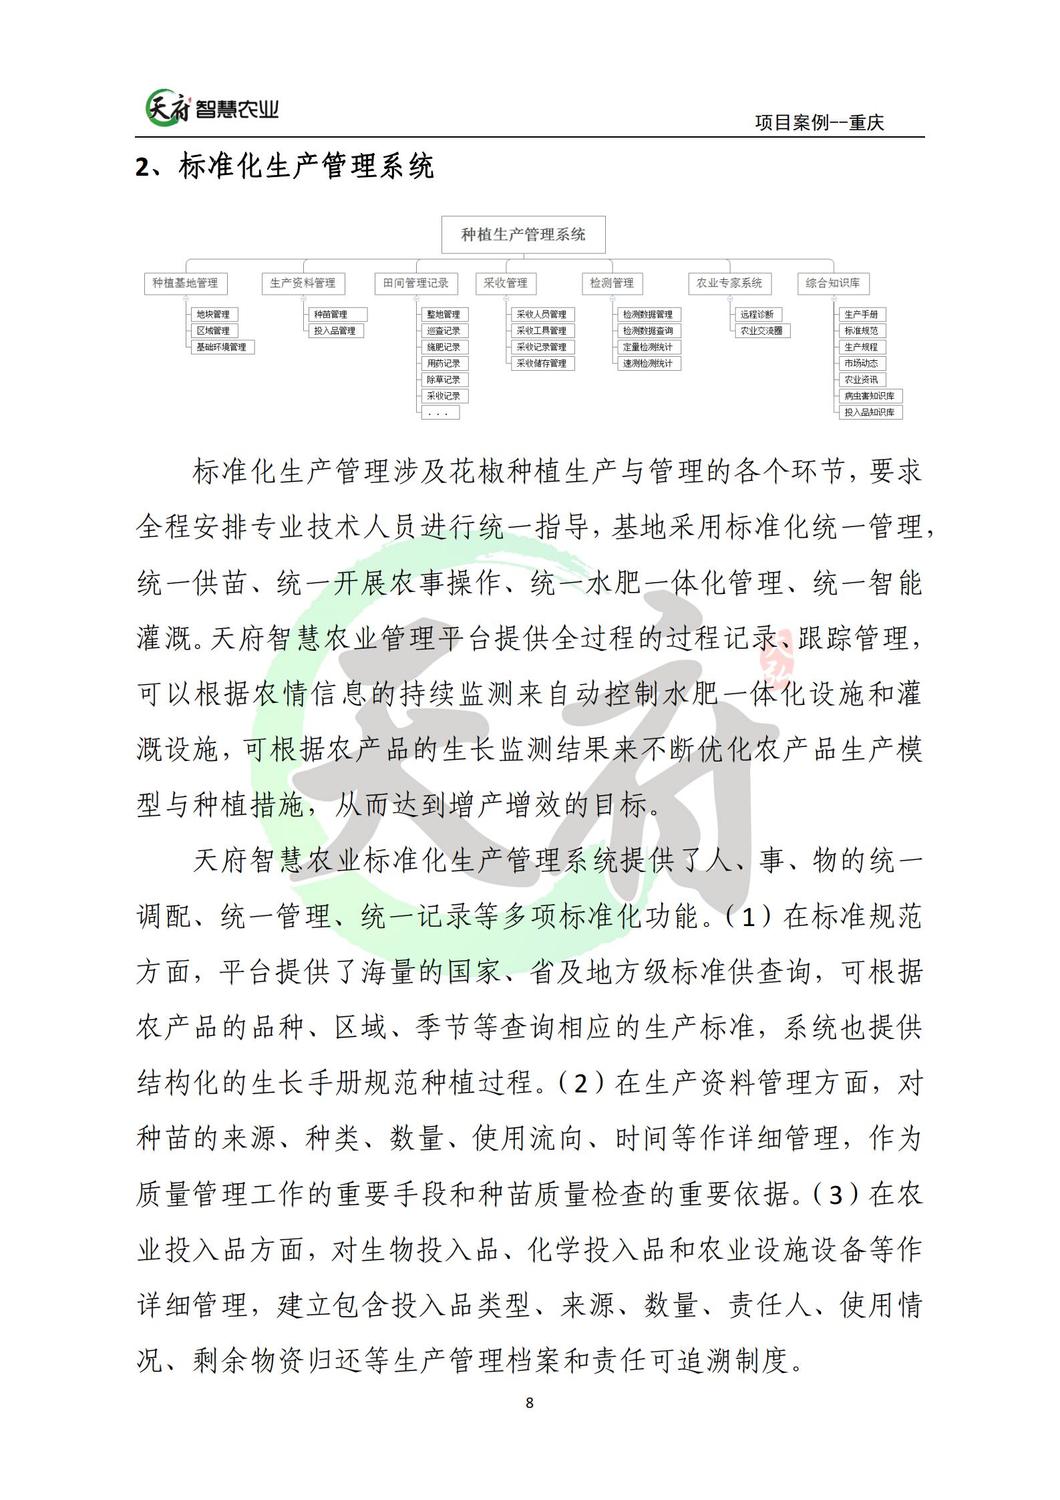 案例7：重庆数字农业花椒示范基地_08.jpg